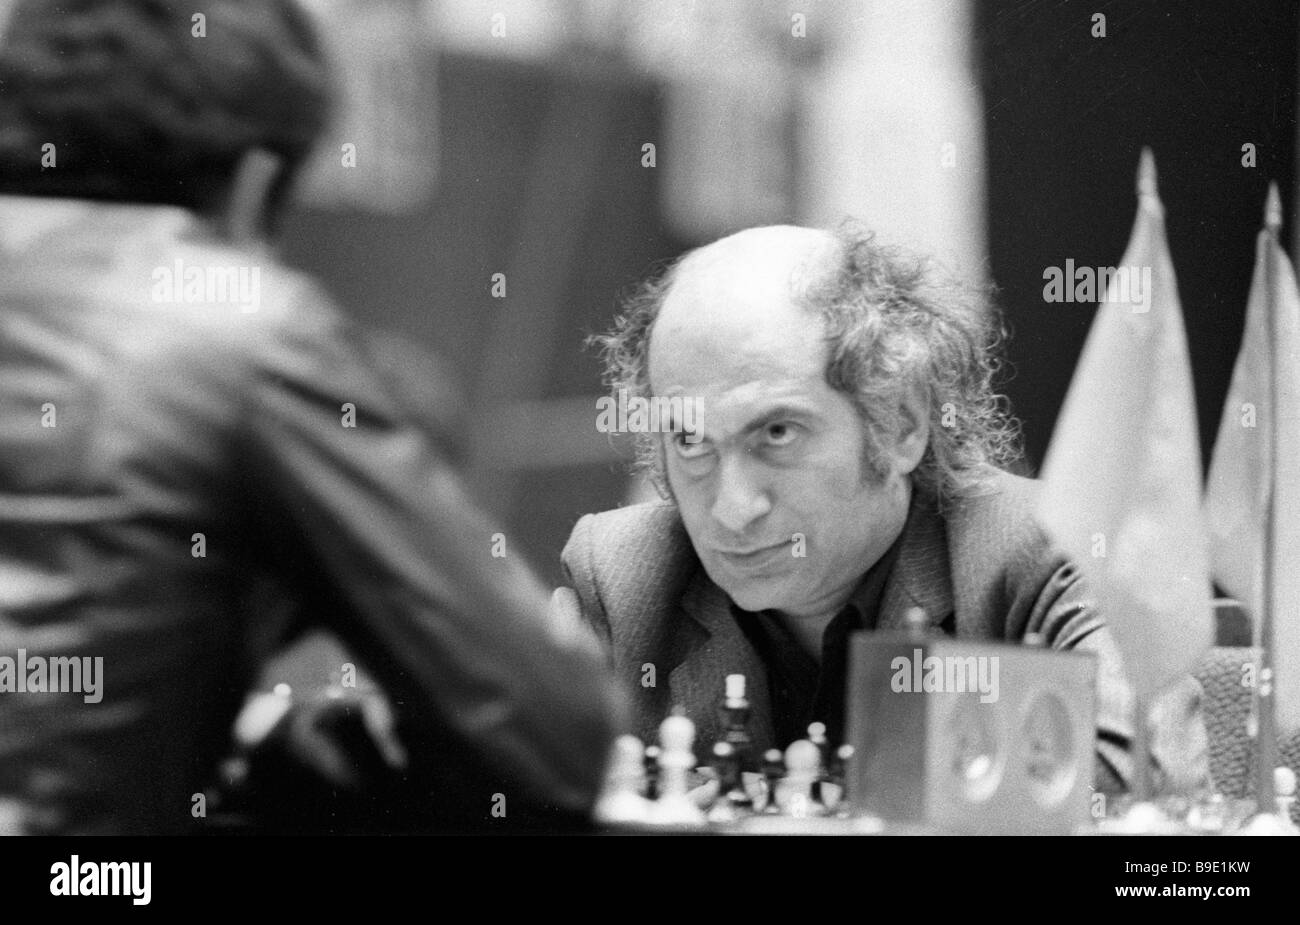 Mikhail Tal at the 'Tournament of Stars' (Montréal, 1979).